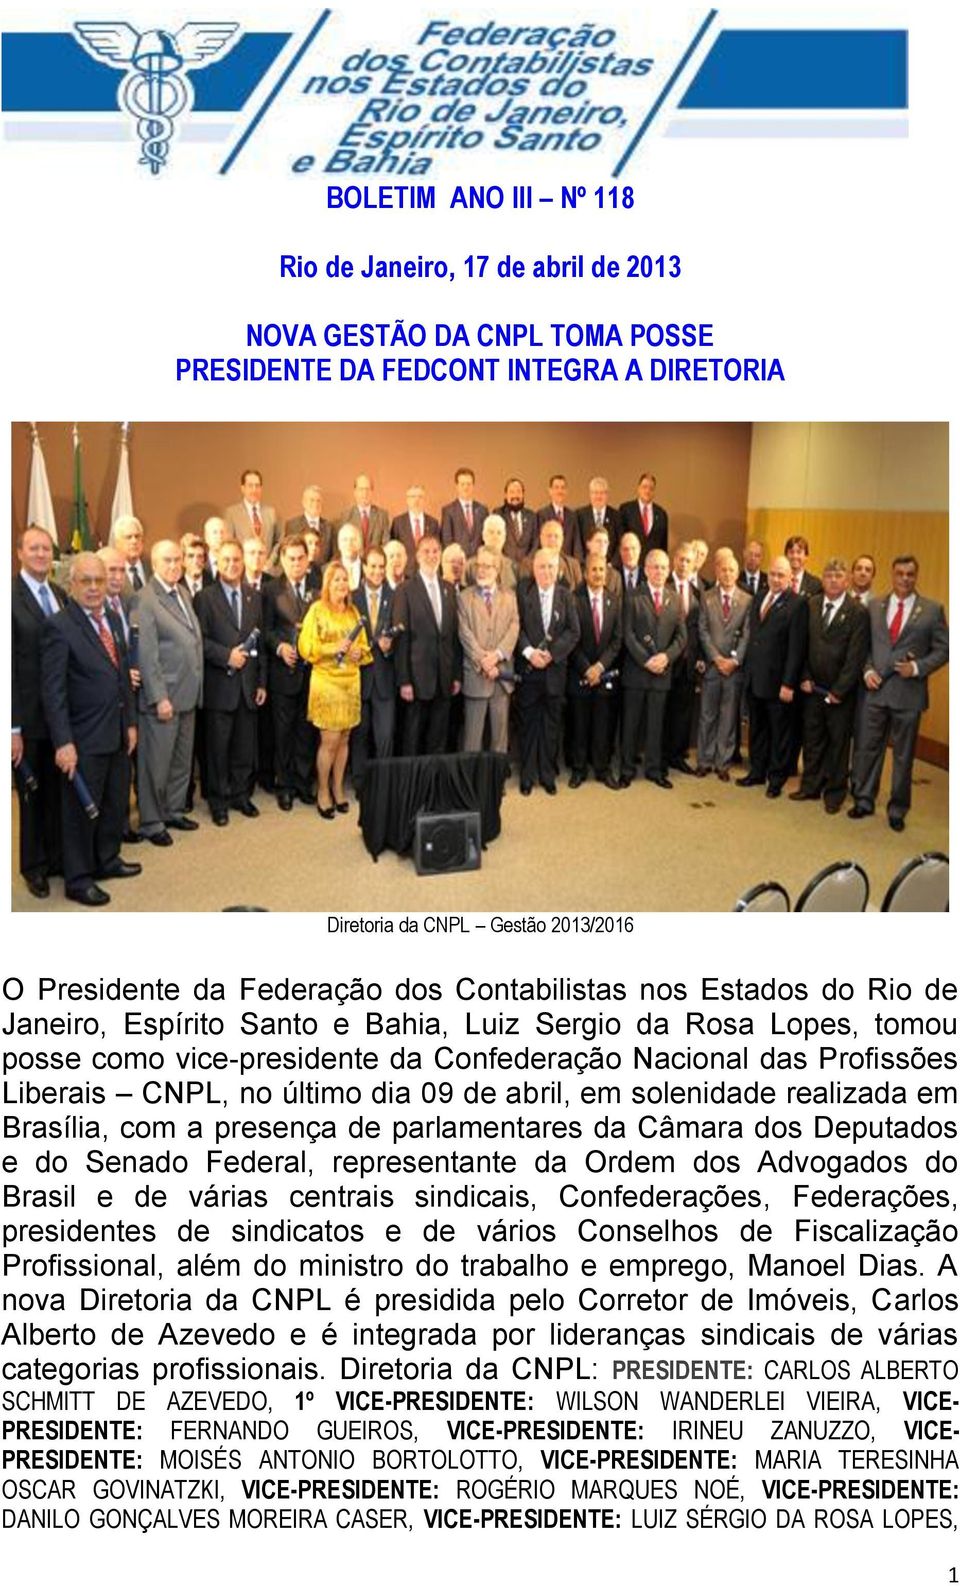 09 de abril, em solenidade realizada em Brasília, com a presença de parlamentares da Câmara dos Deputados e do Senado Federal, representante da Ordem dos Advogados do Brasil e de várias centrais